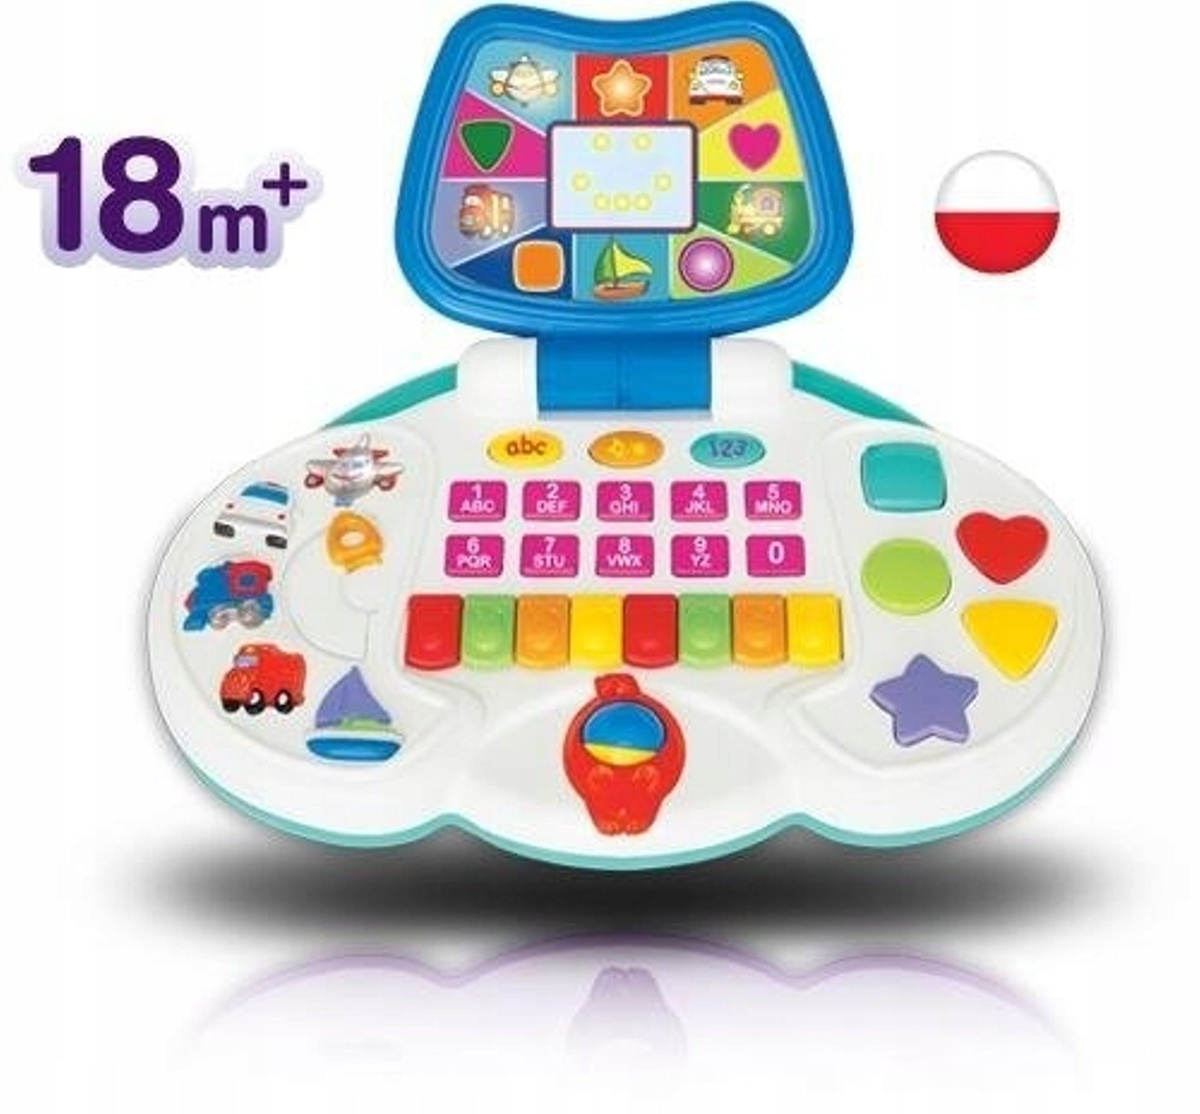 Tablet Edukacyjny Dla 2 Latka INTERAKTYWNY LAPTOP dla dzieci EDUKACYJNY DUMEL | Zabawki \ Edukacyjne